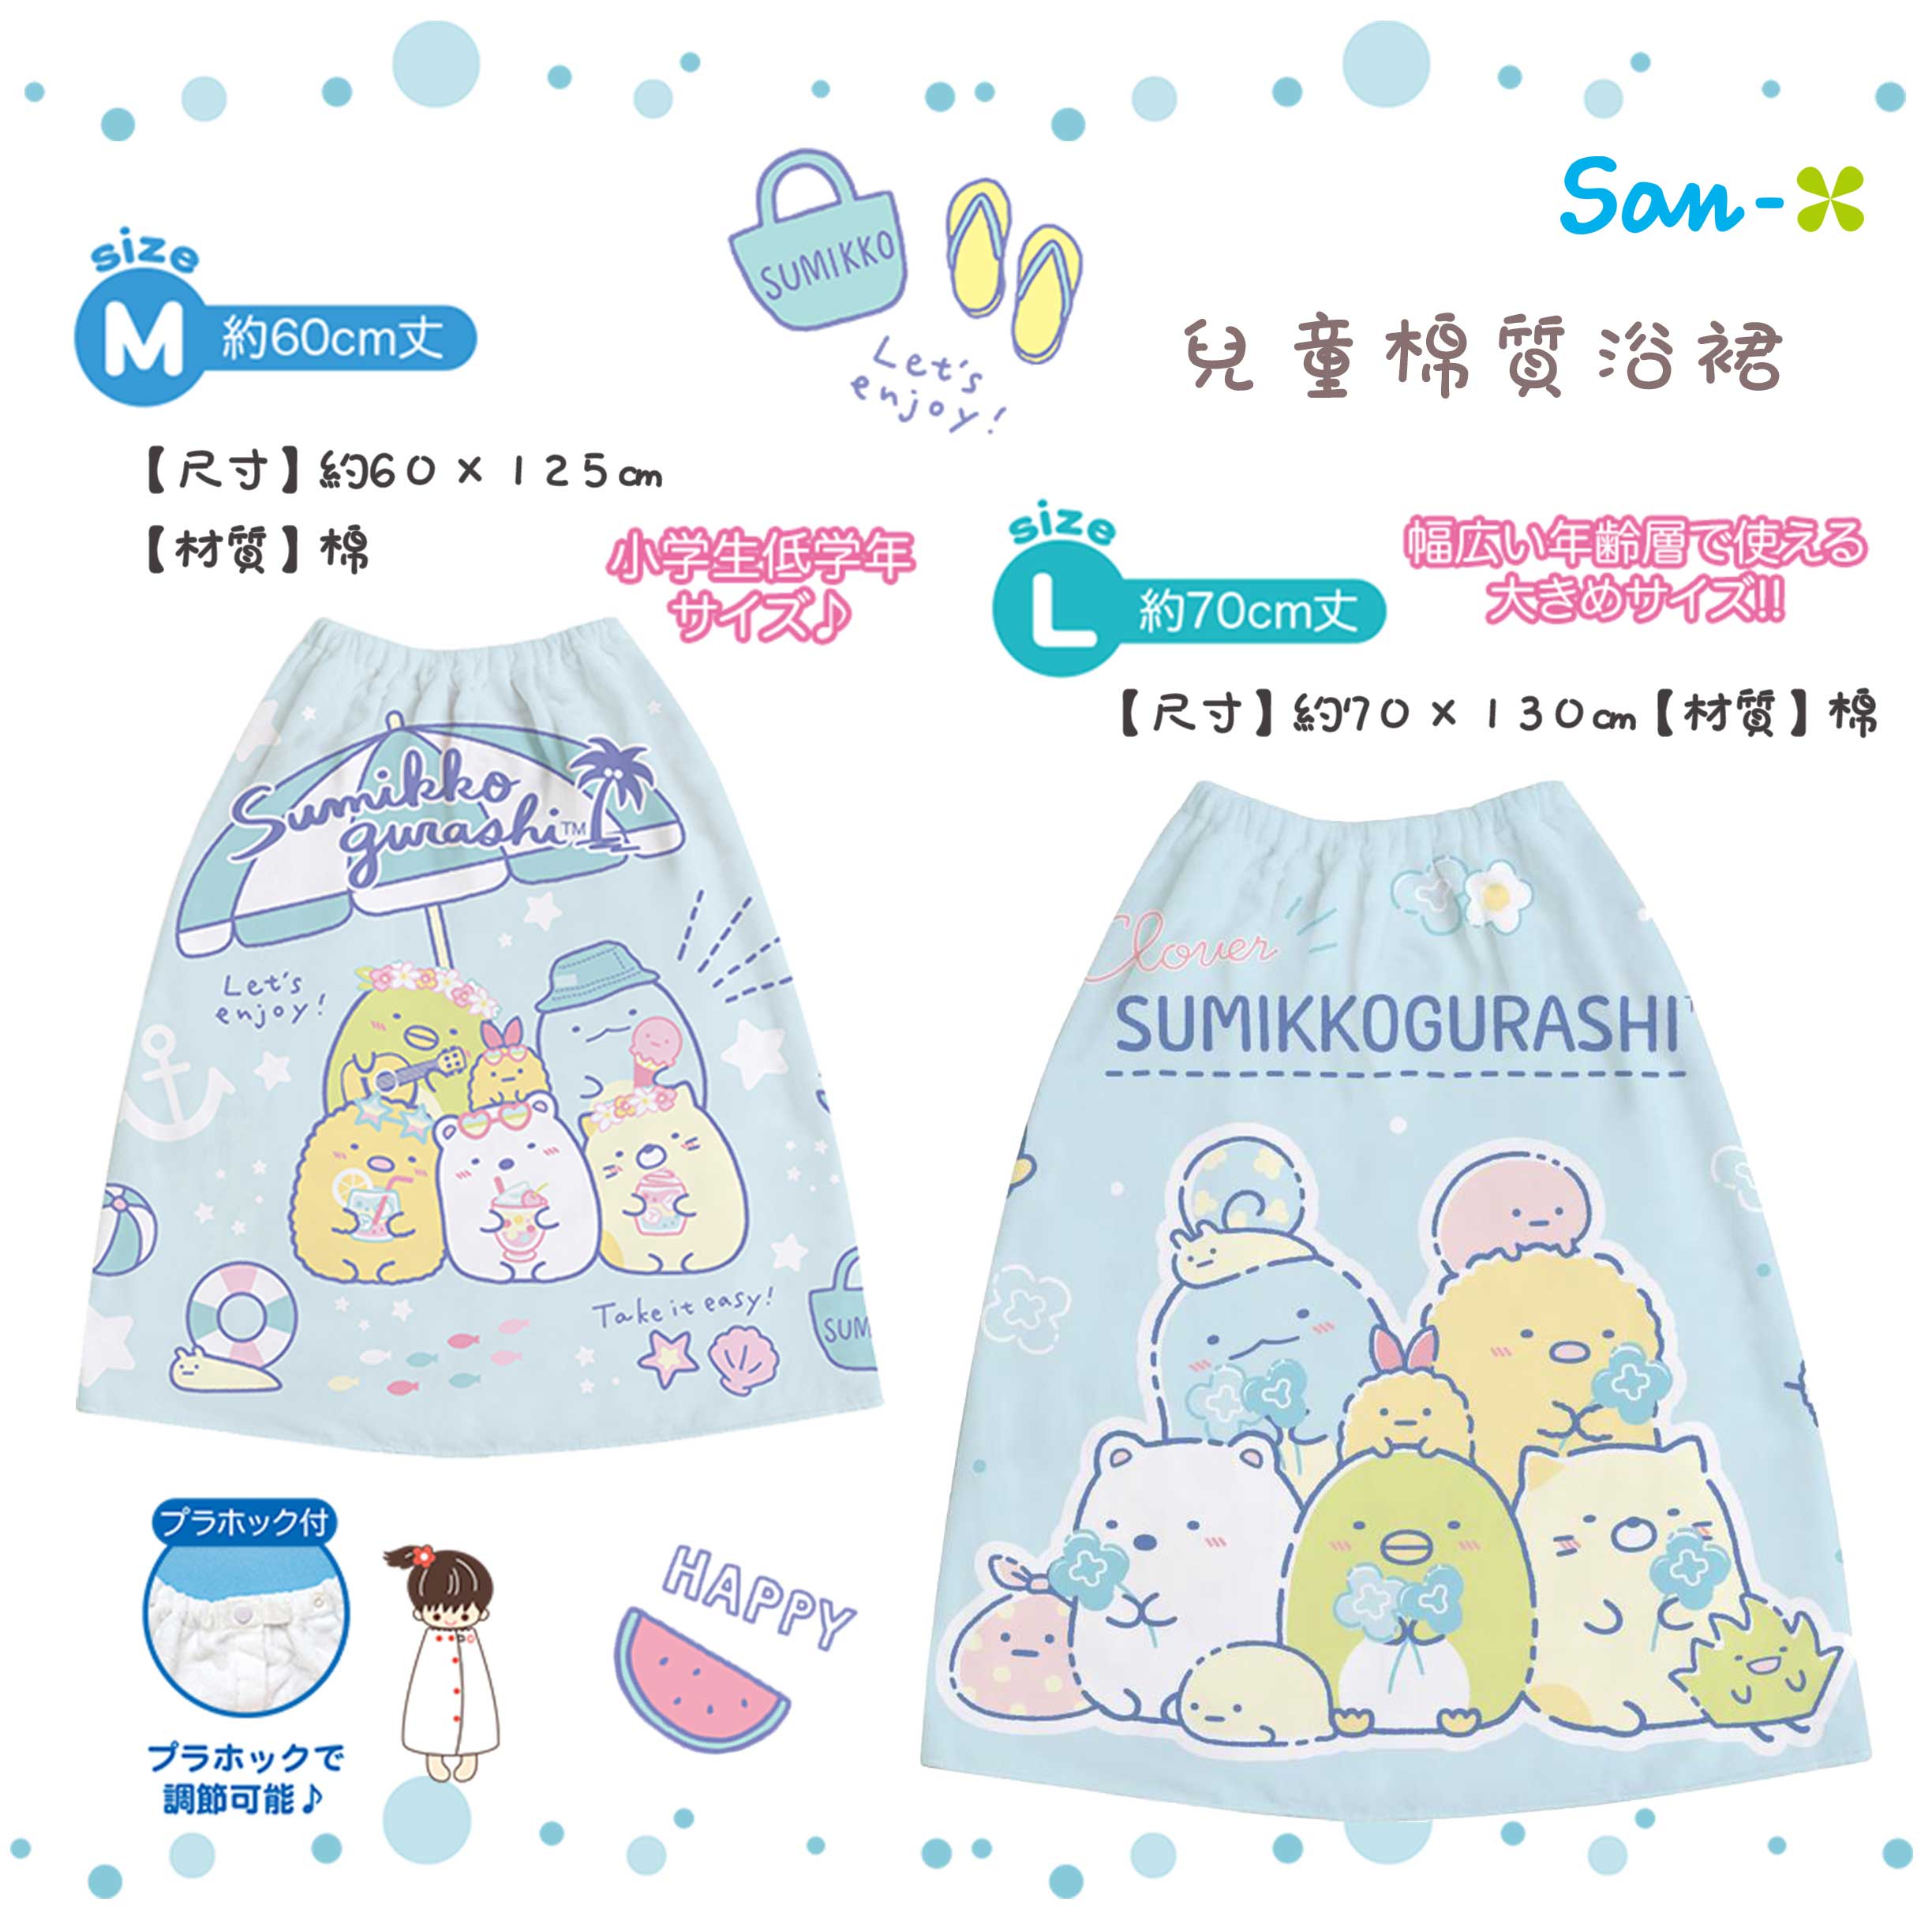 兒童棉質浴裙-角落生物 sumikko gurashi SAN-X 日本進口正版授權